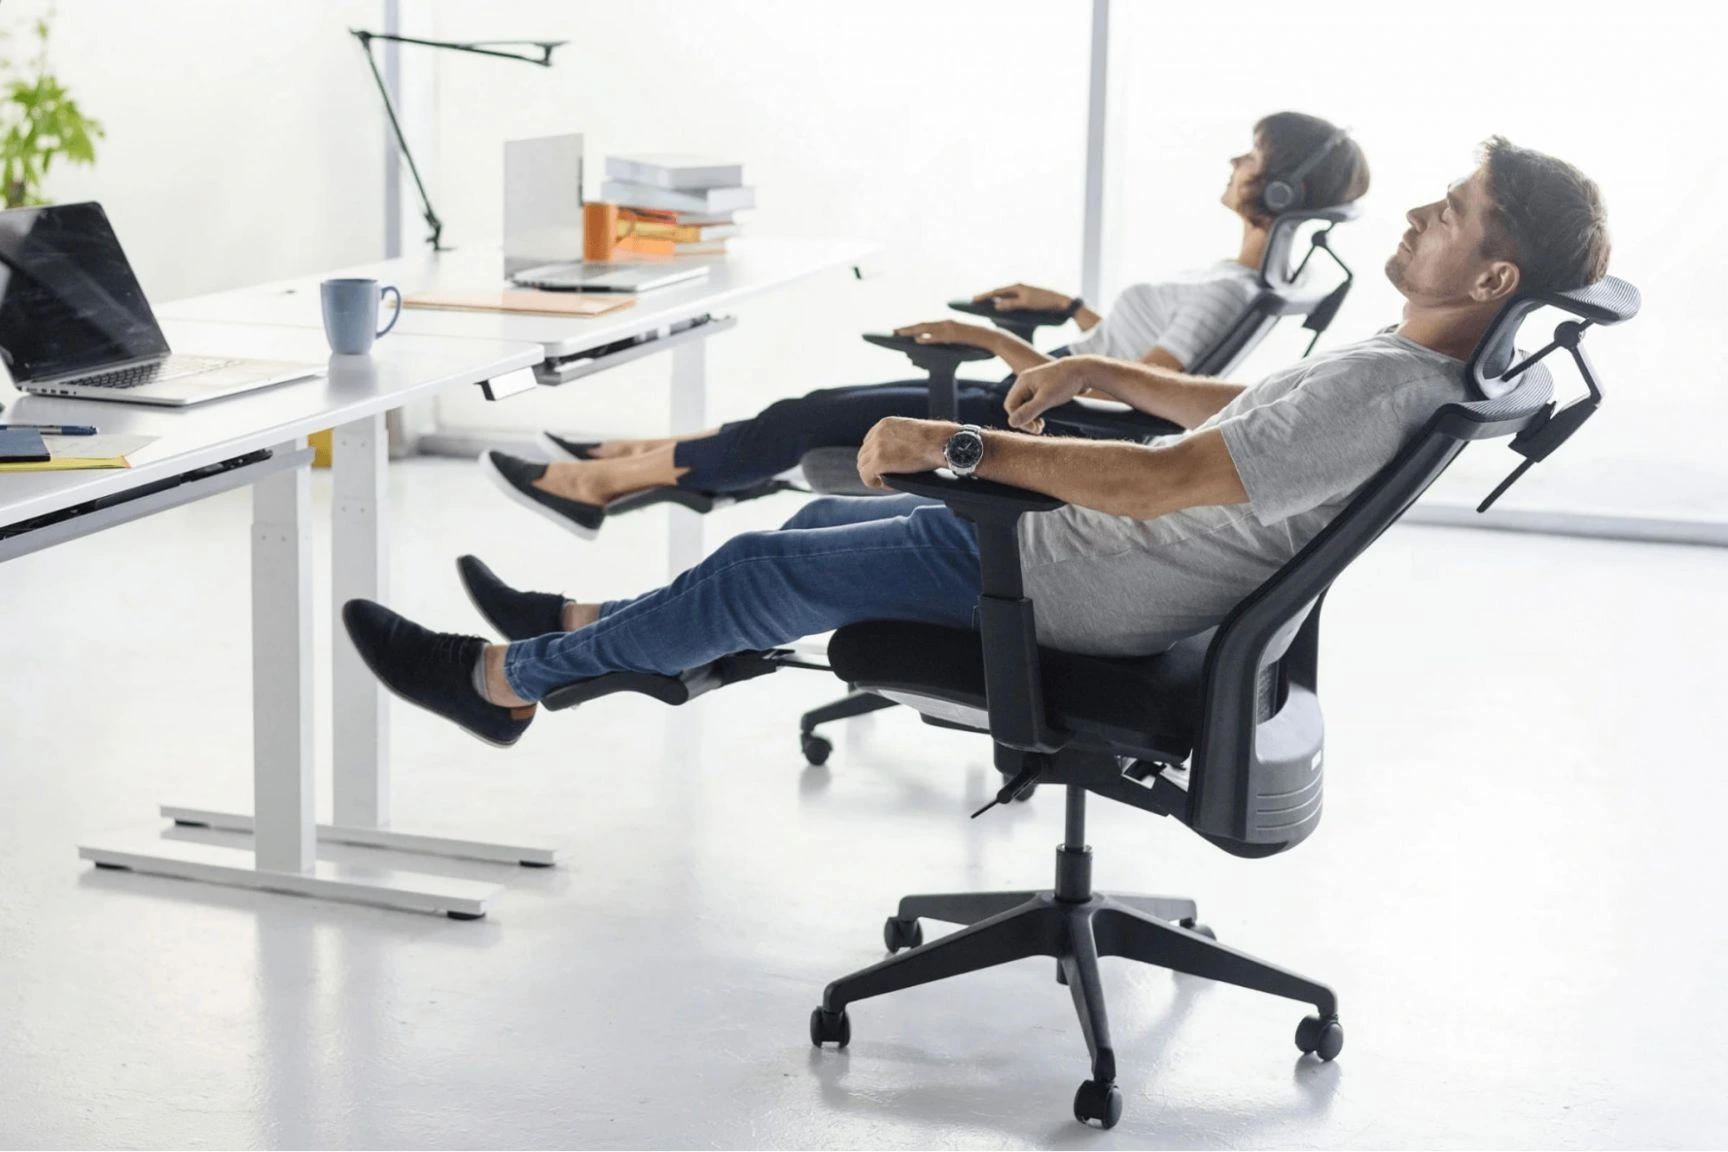 Ghế ergonomic được làm từ các chất liệu cao cấp, đẹp mắt